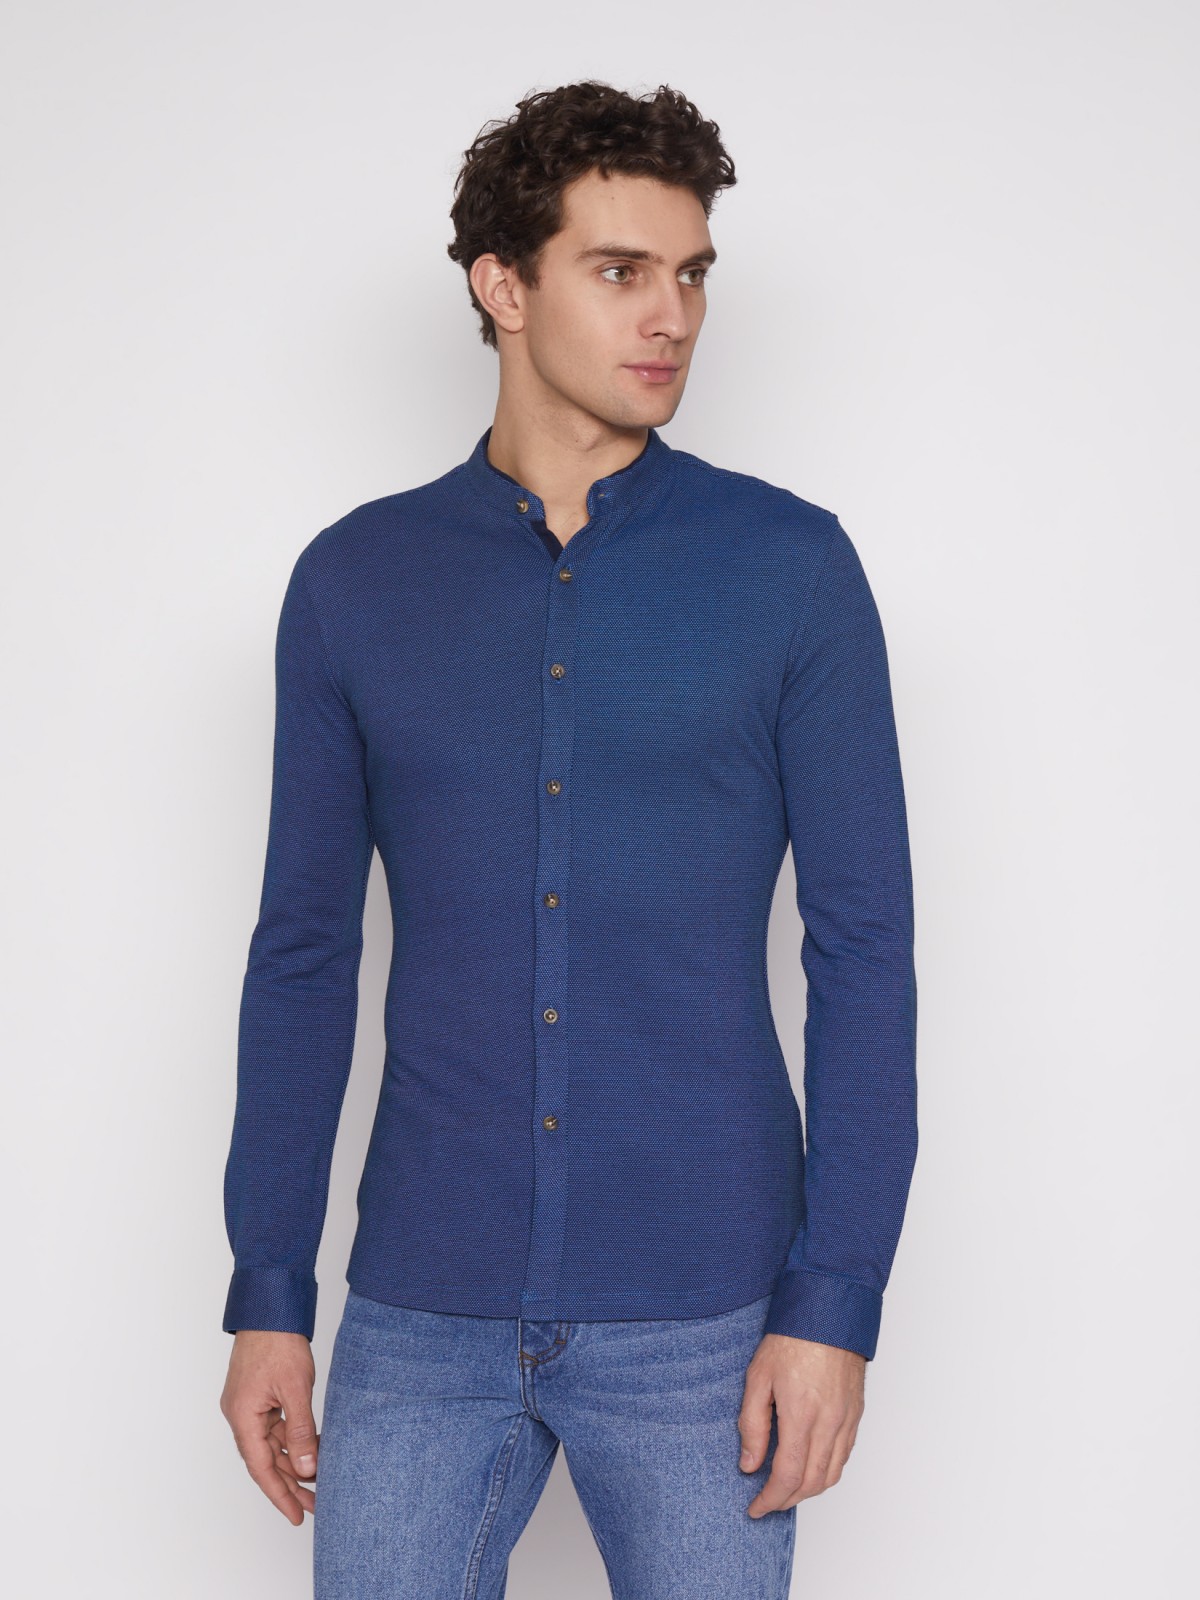 Рубашка с воротником-стойкой zolla 012132159023, цвет темно-синий, размер S - фото 3